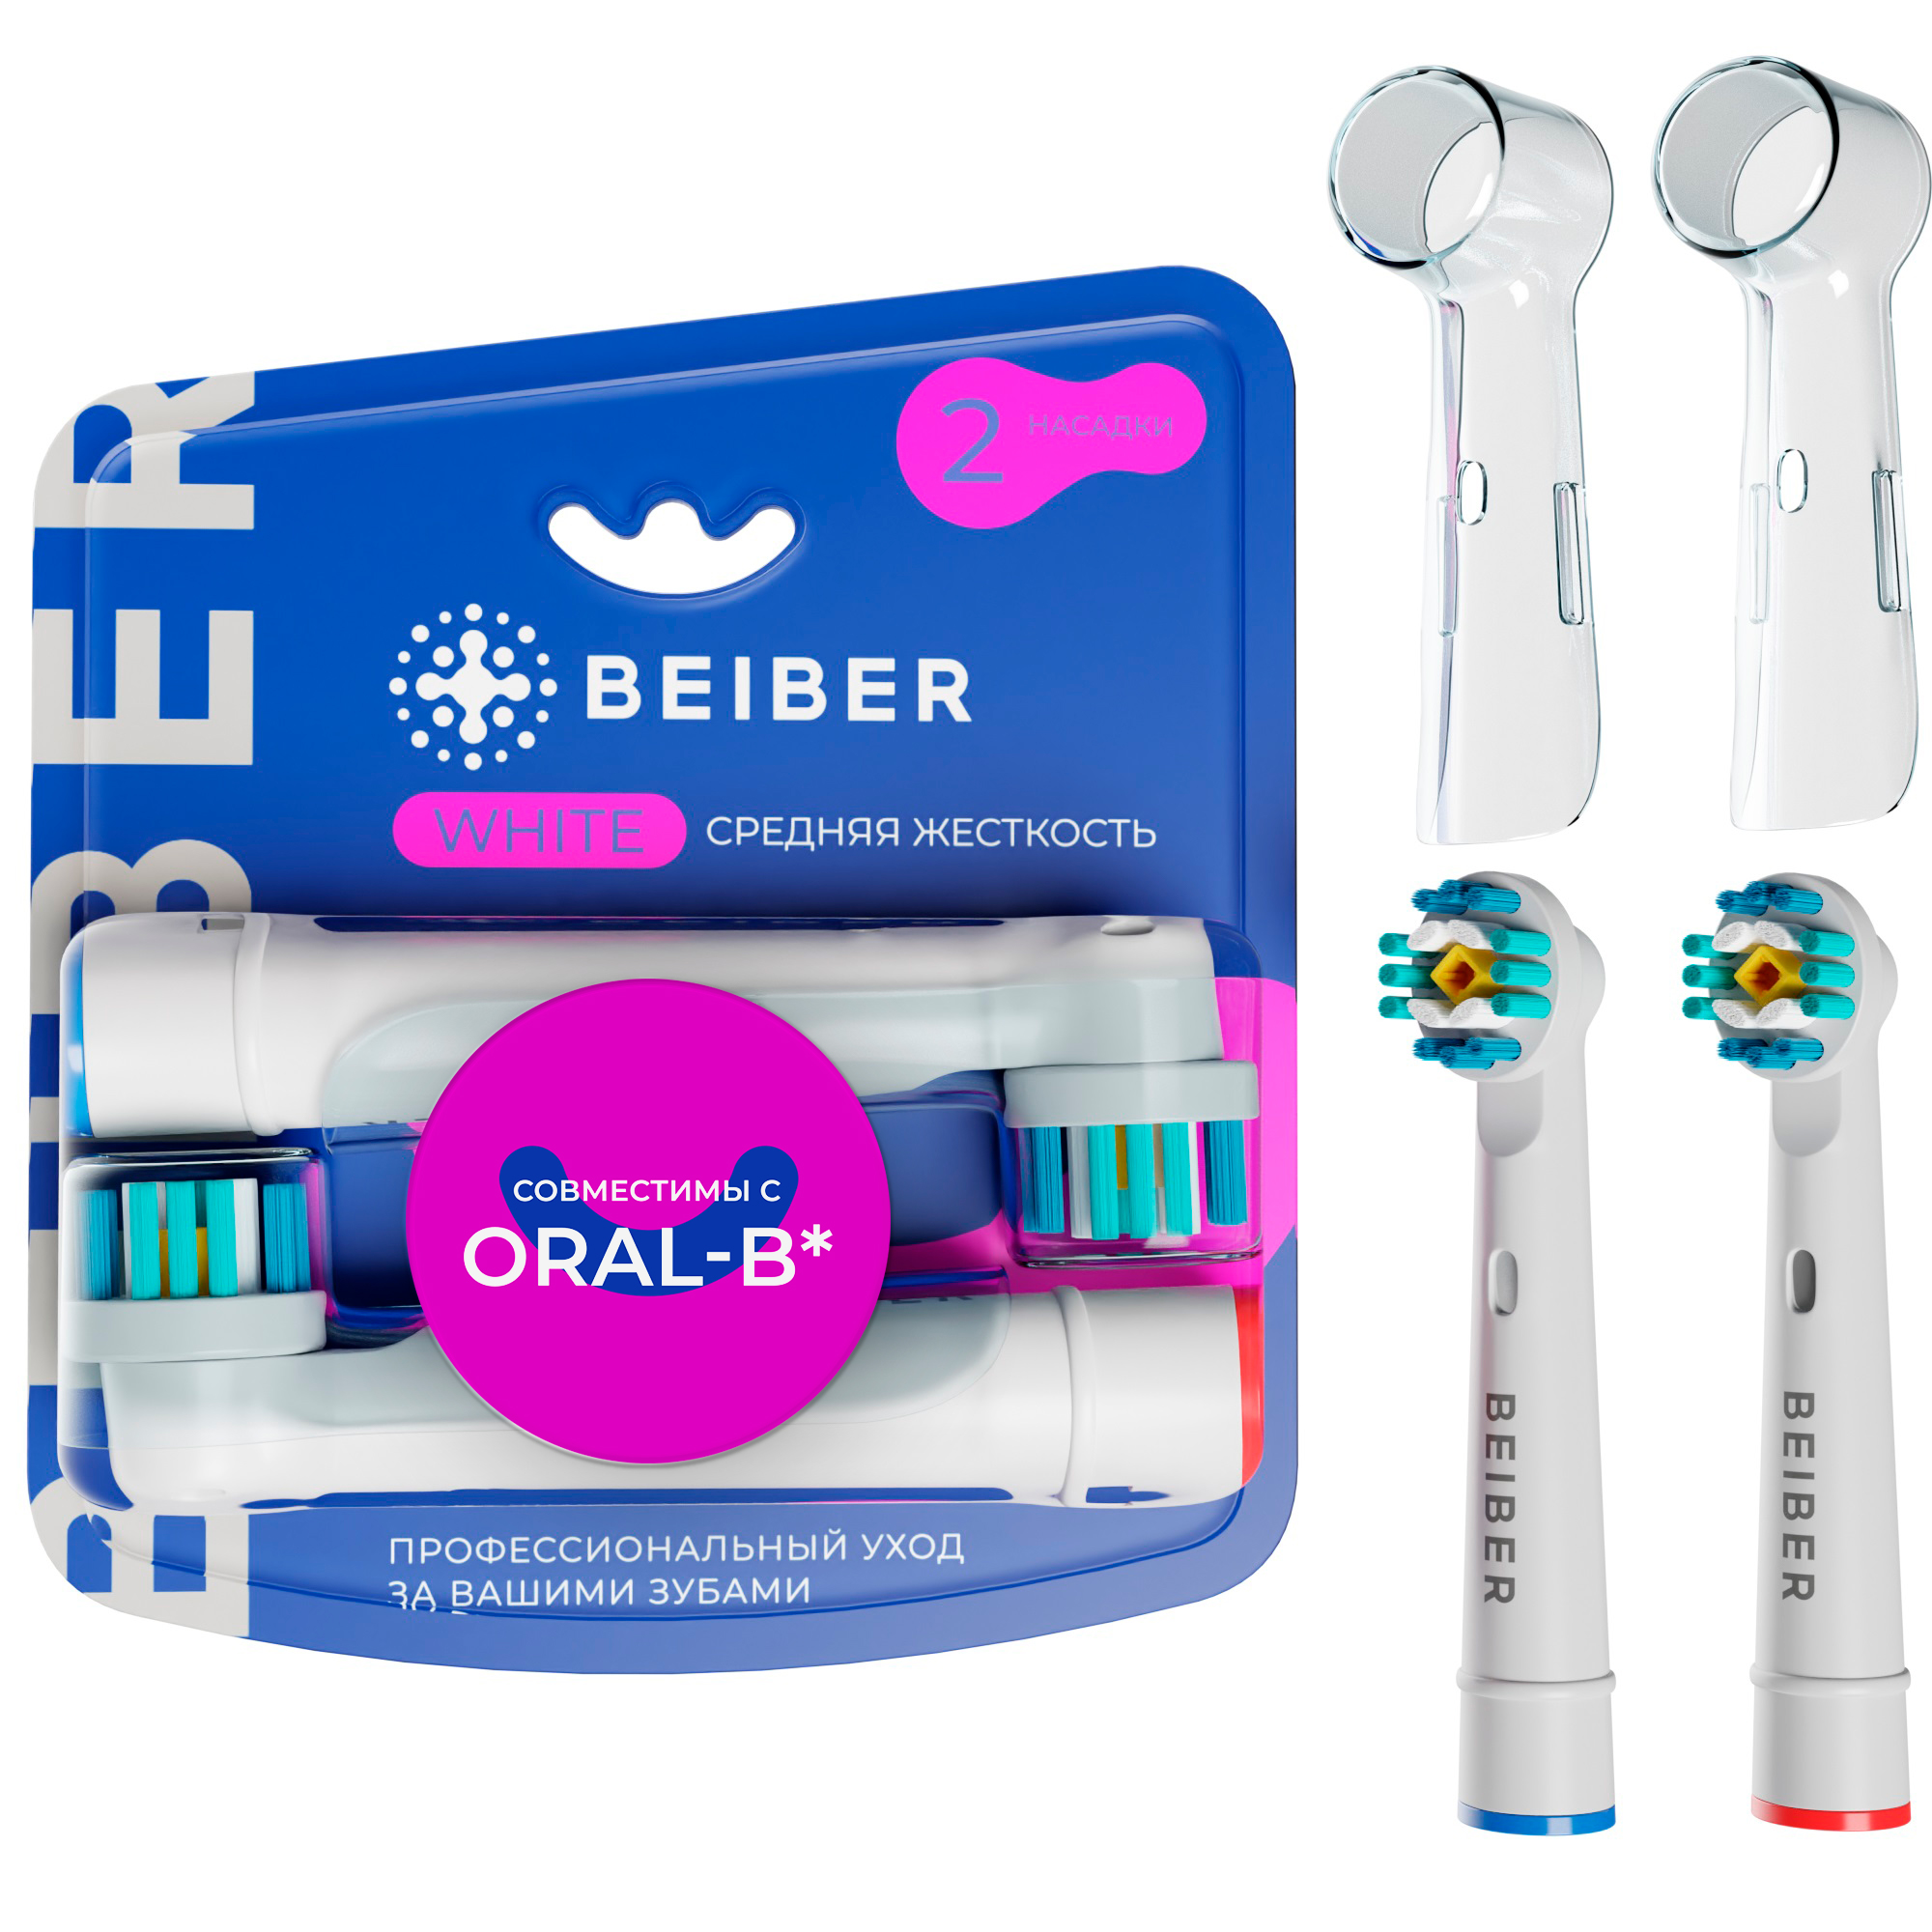 Насадка для электрической зубной щетки BEIBER WHITE насадка для электрической зубной щетки beiber classic